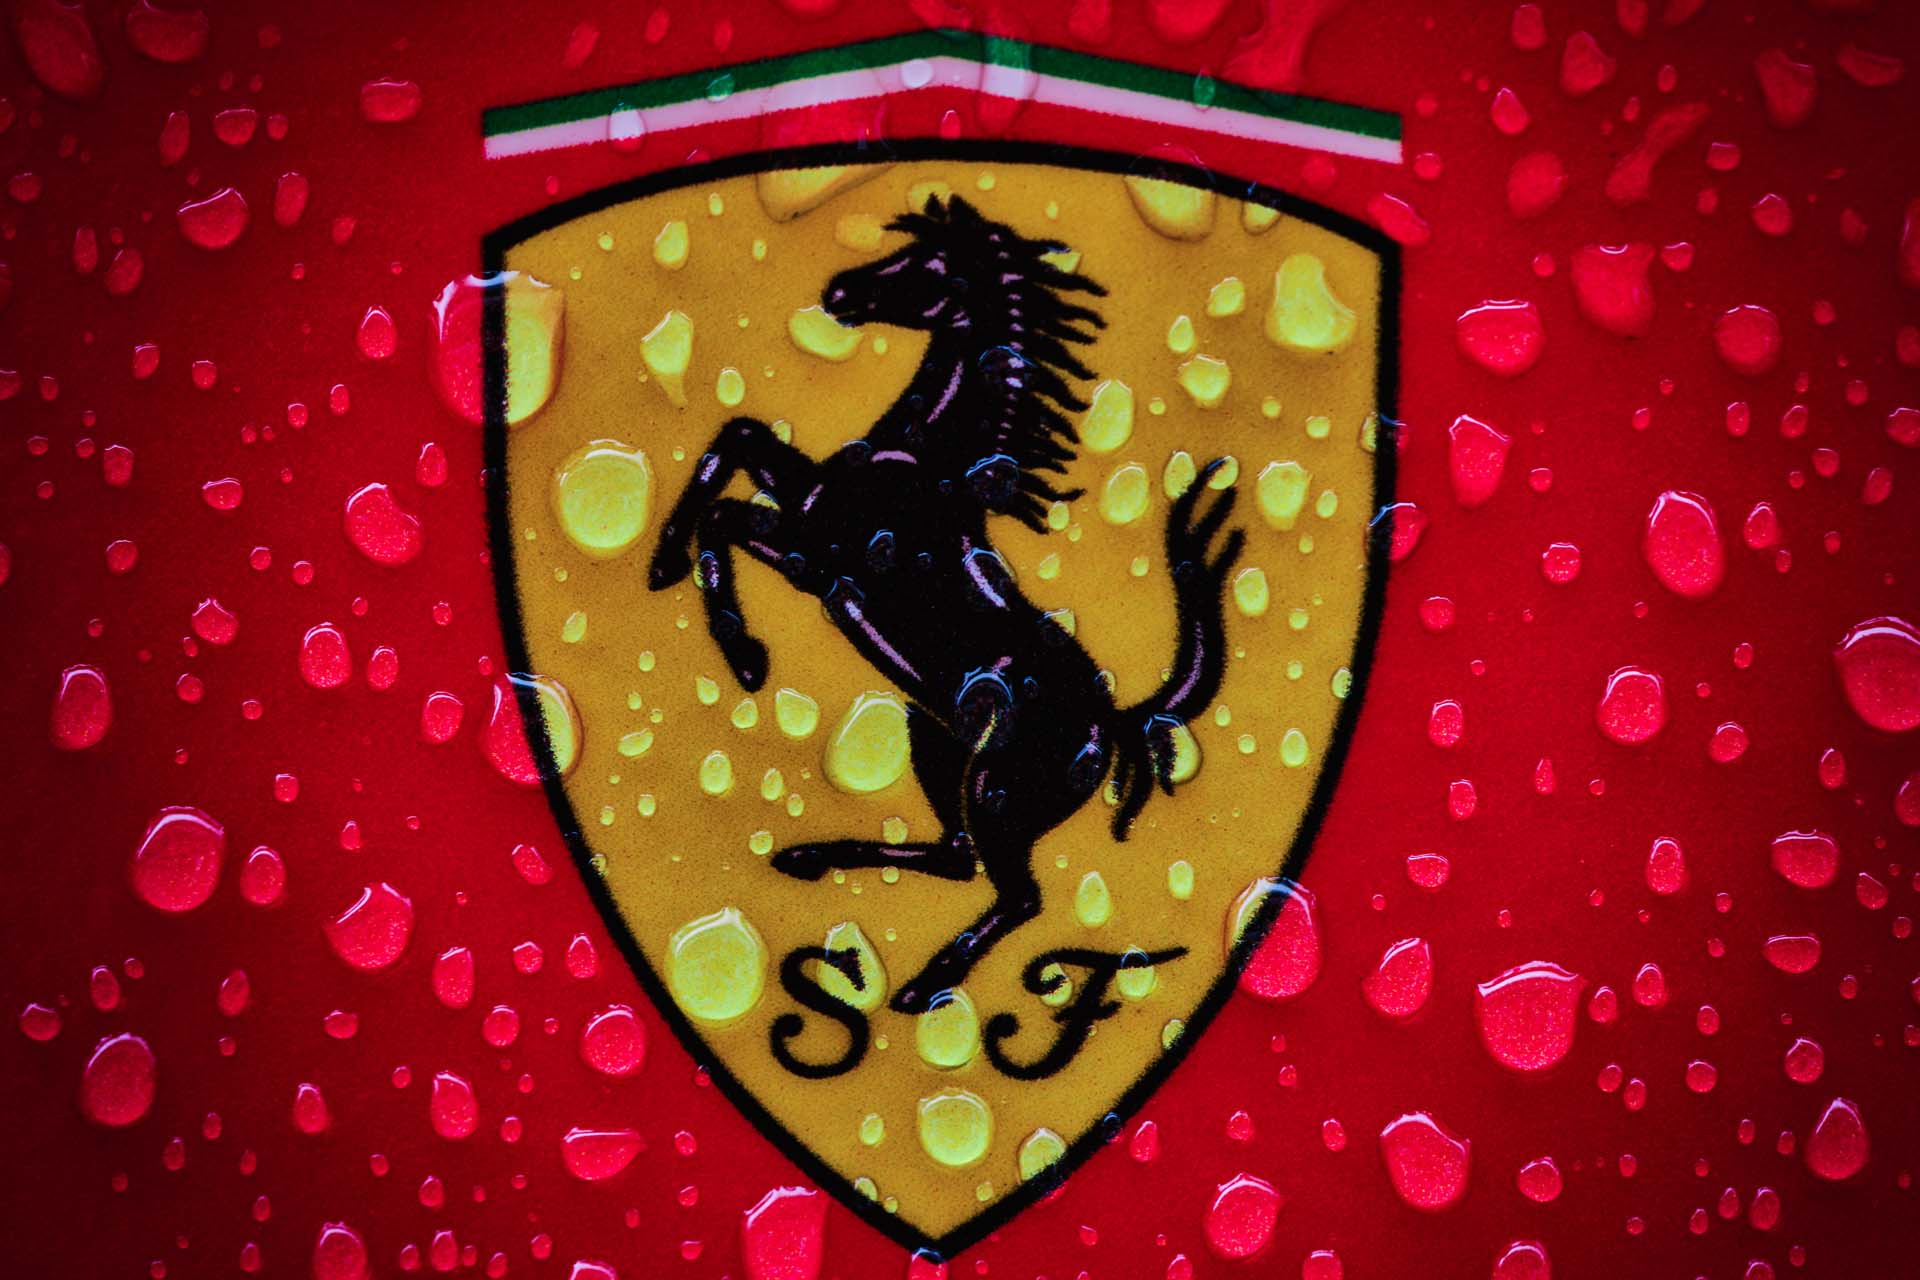 Ferrari F1 autók szemléltetik a különleges stílust Miamiban!